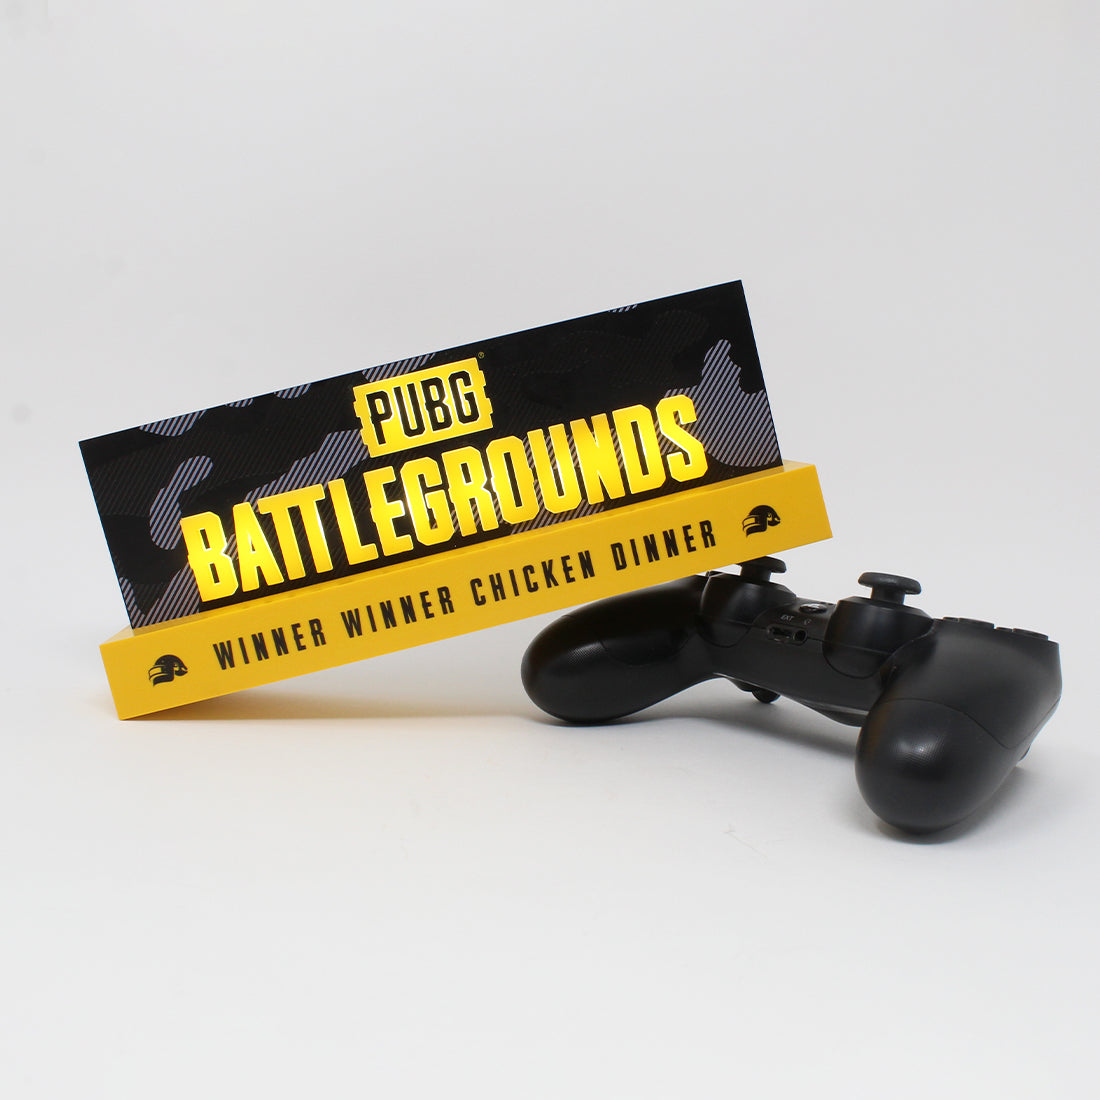 PUBG: Battlegrounds – Logo light